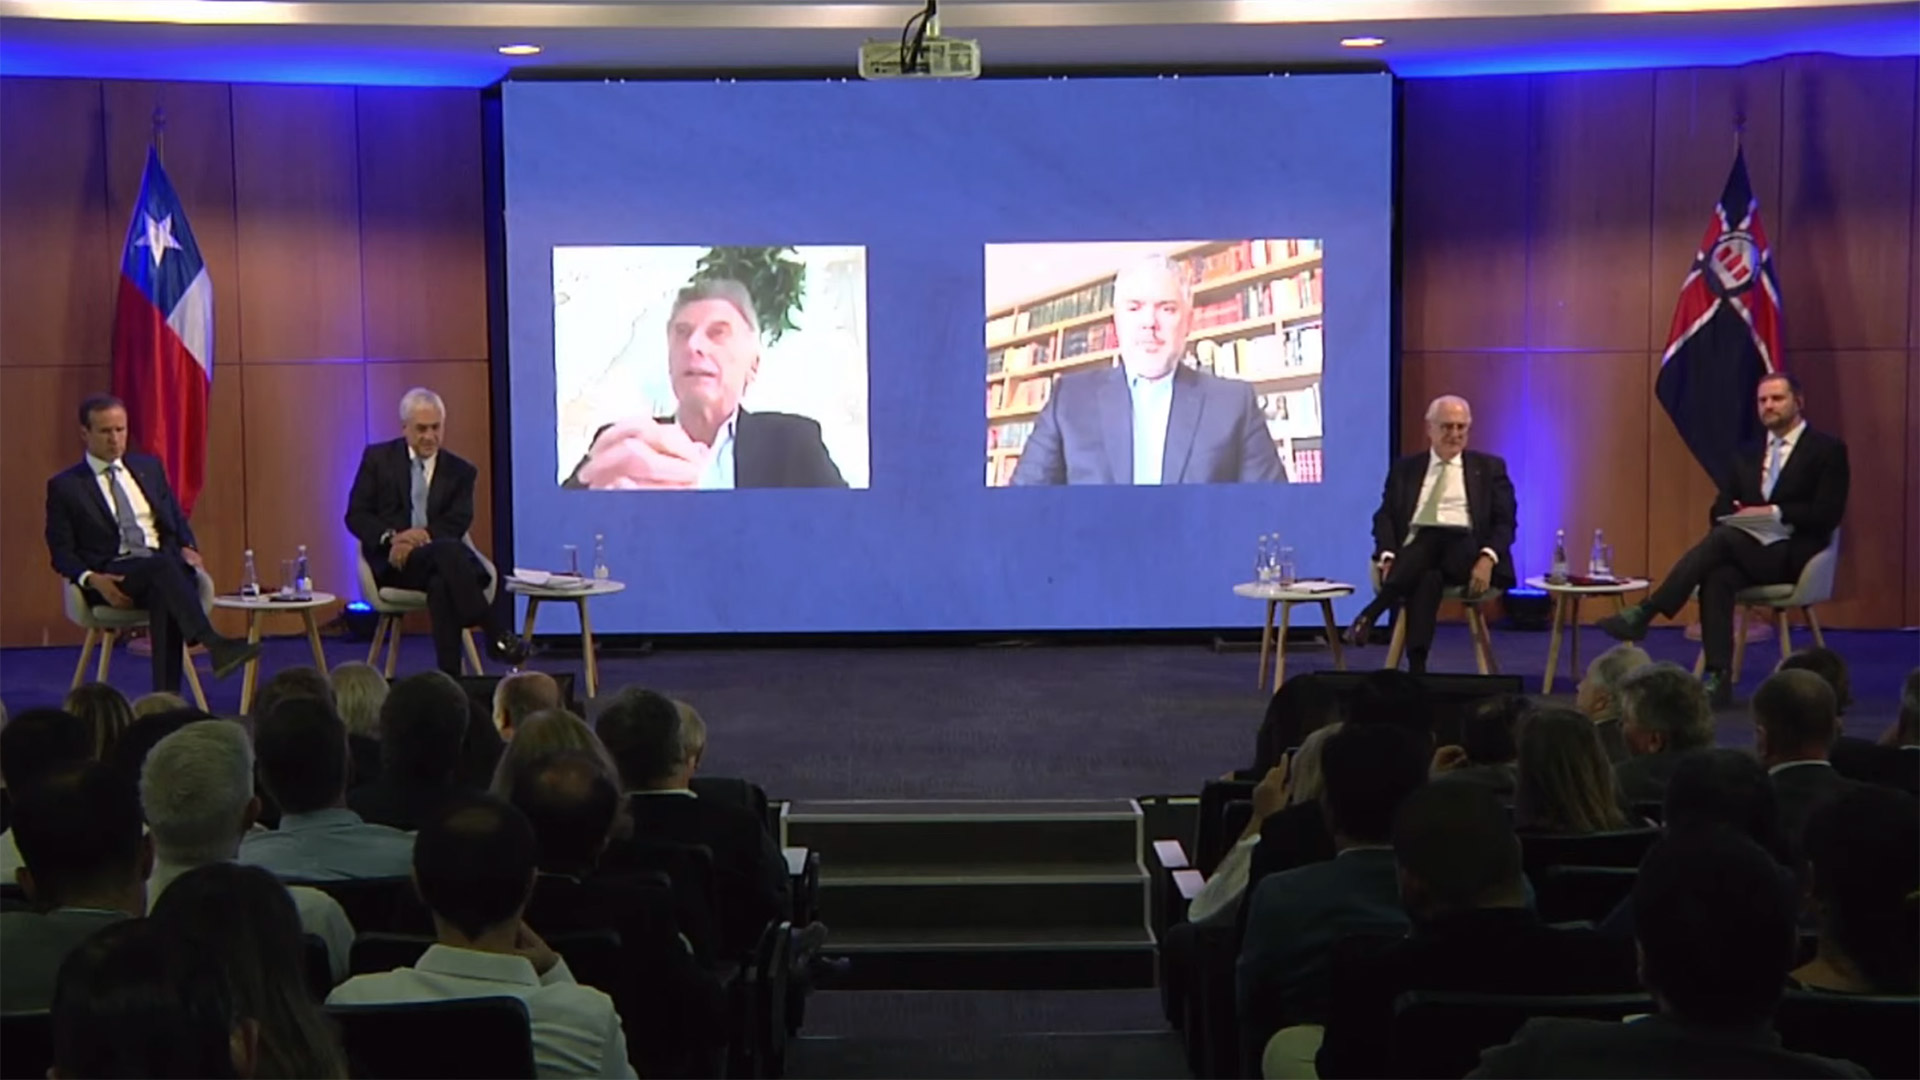 Iván Duque y Mauricio Macri participaron en el debate a través de videollamadas